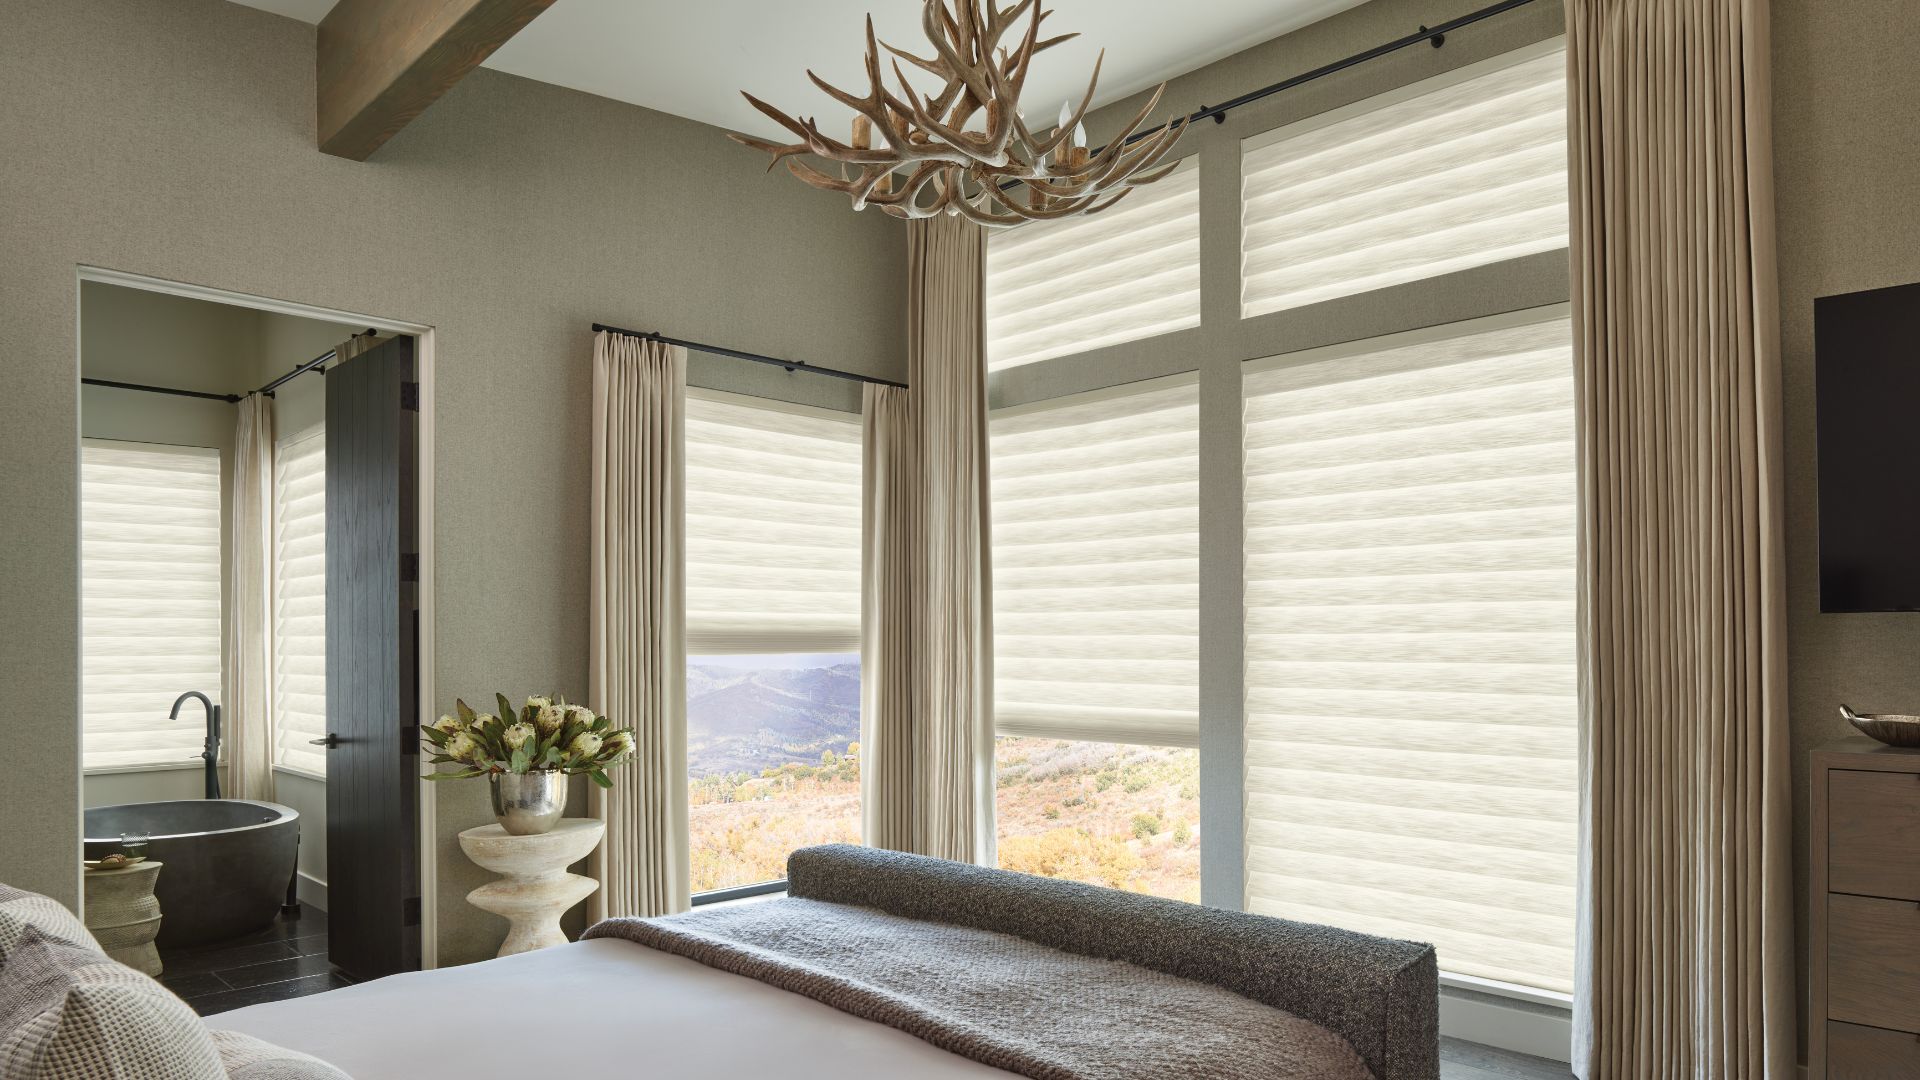 Hunter Douglas window treatments in a cozy bedroom